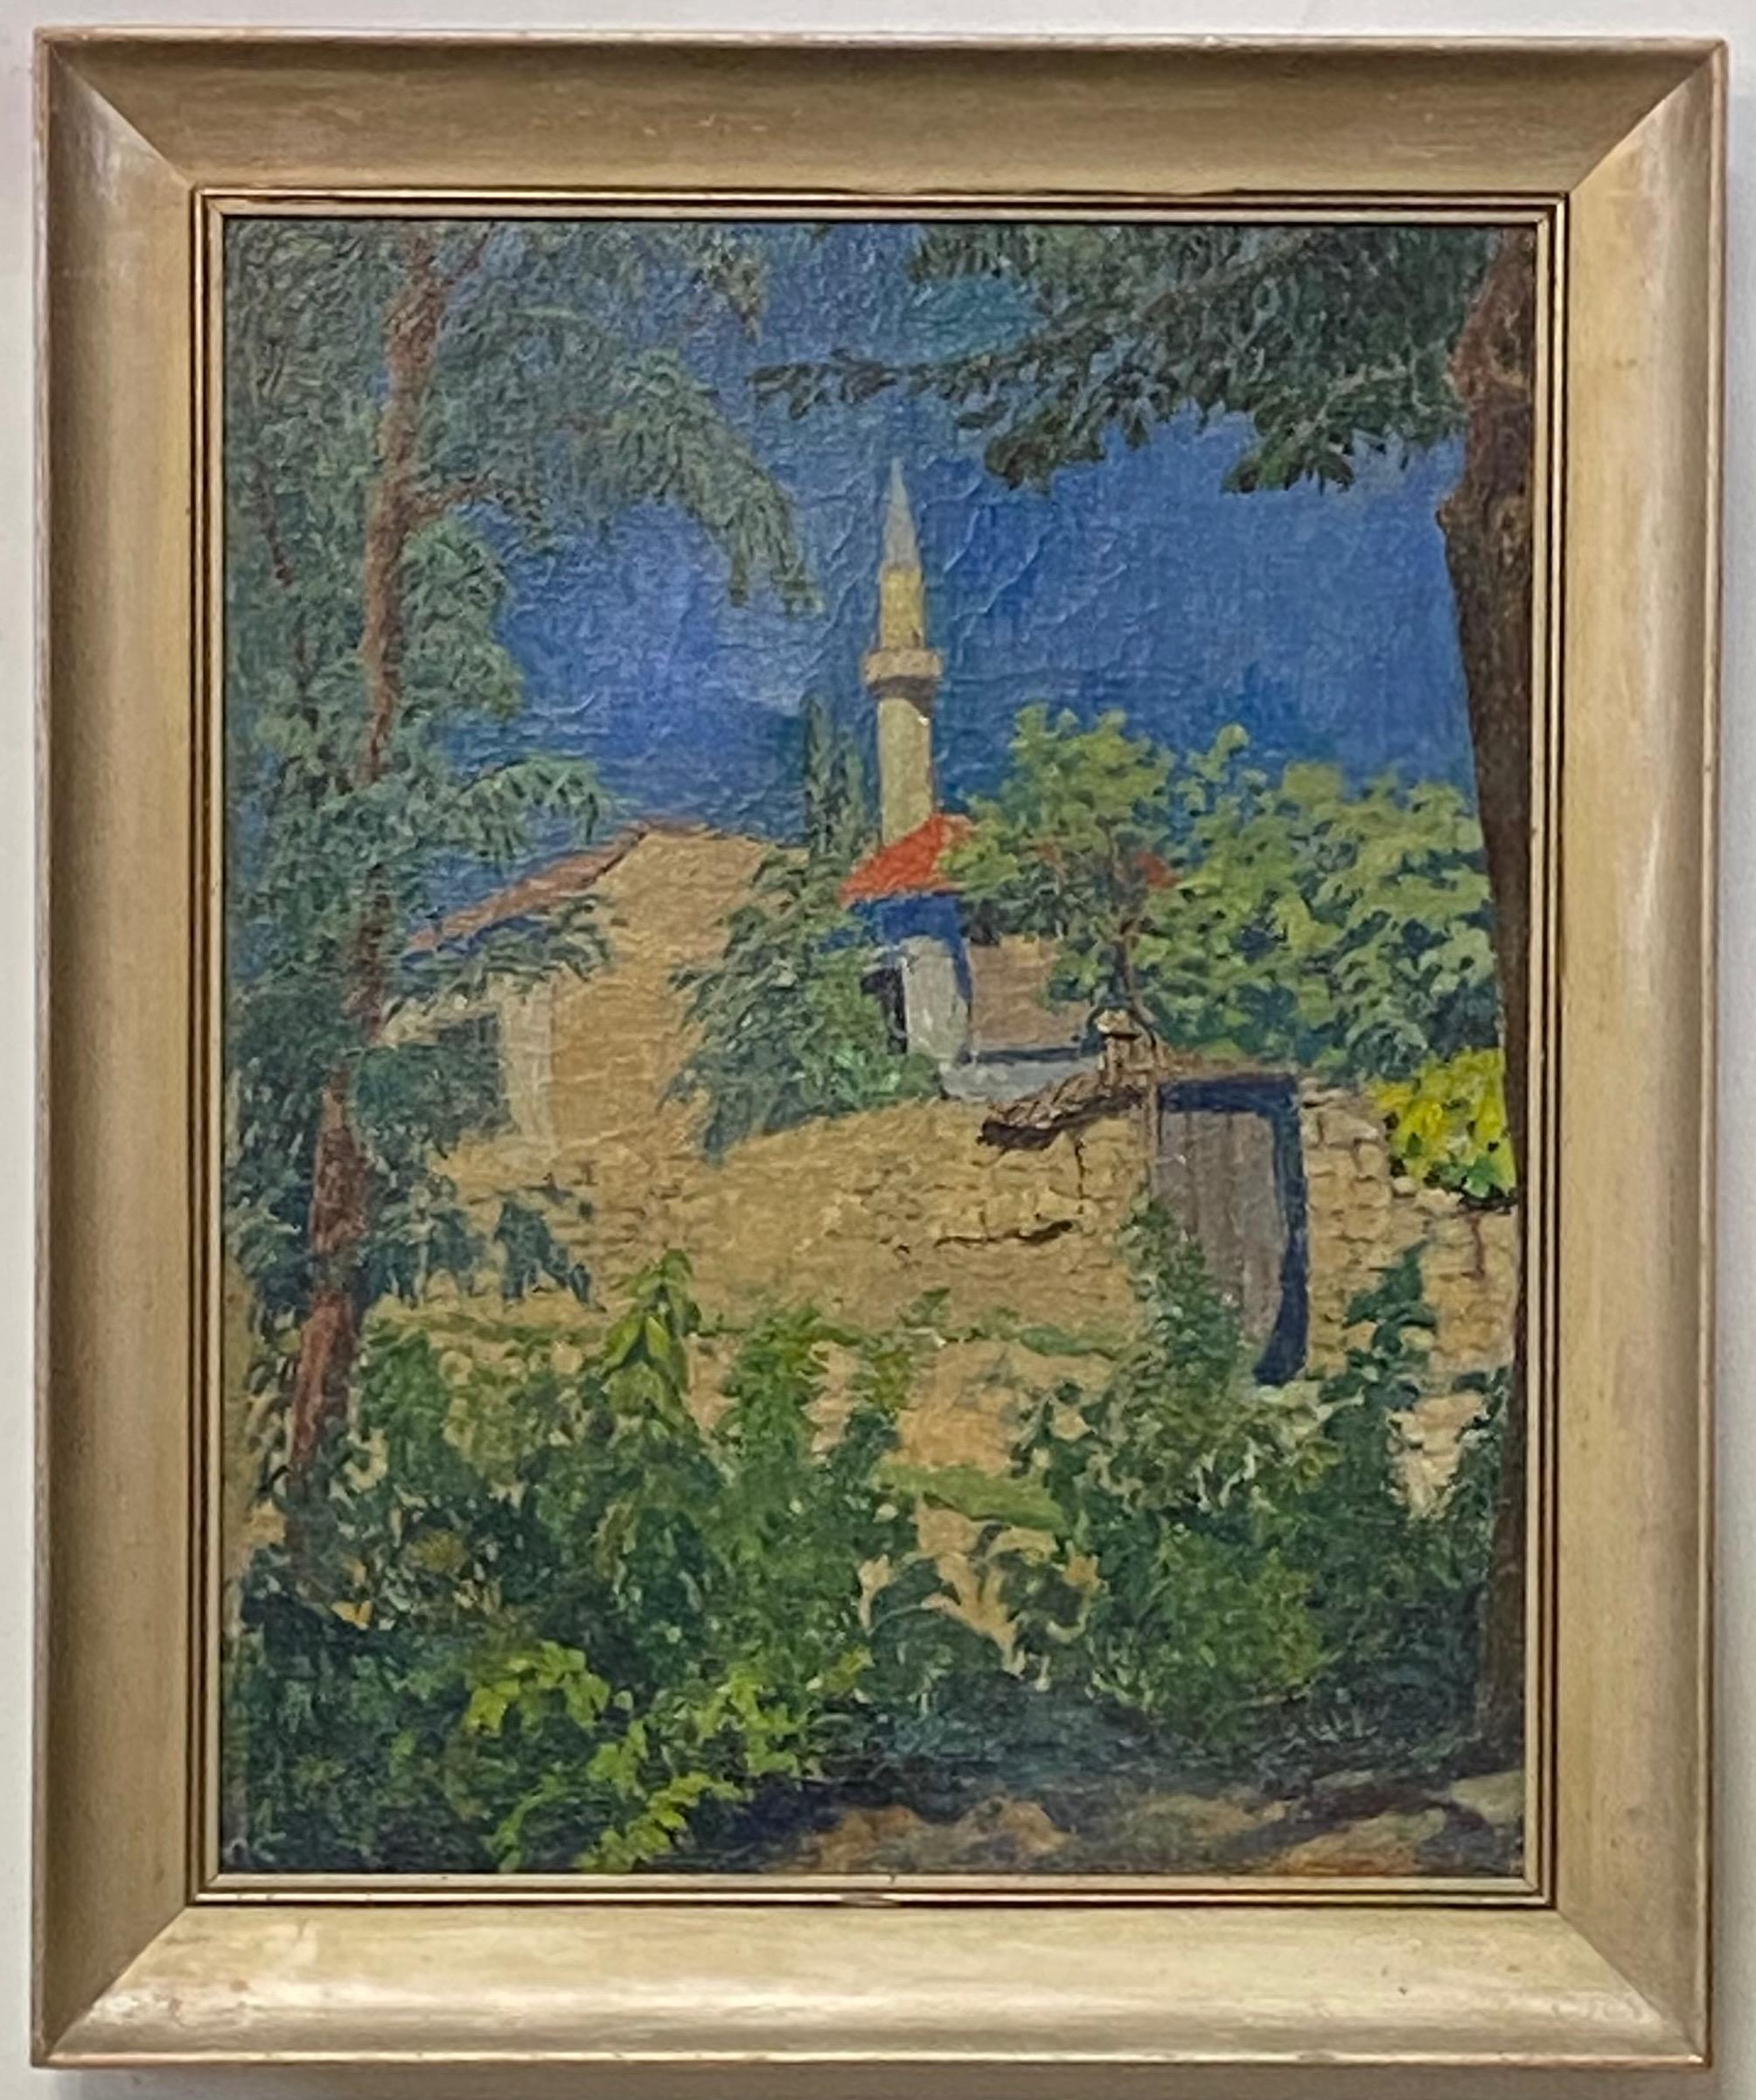 Eine schön gemalte Landschaftsszene mit einem türkischen Minarett. 
Öl auf Leinwand in Holzrahmen, unsigniert.
Dieses Gemälde wurde neu gezeichnet und scheint verkleinert worden zu sein (möglicherweise der Grund für das Fehlen einer